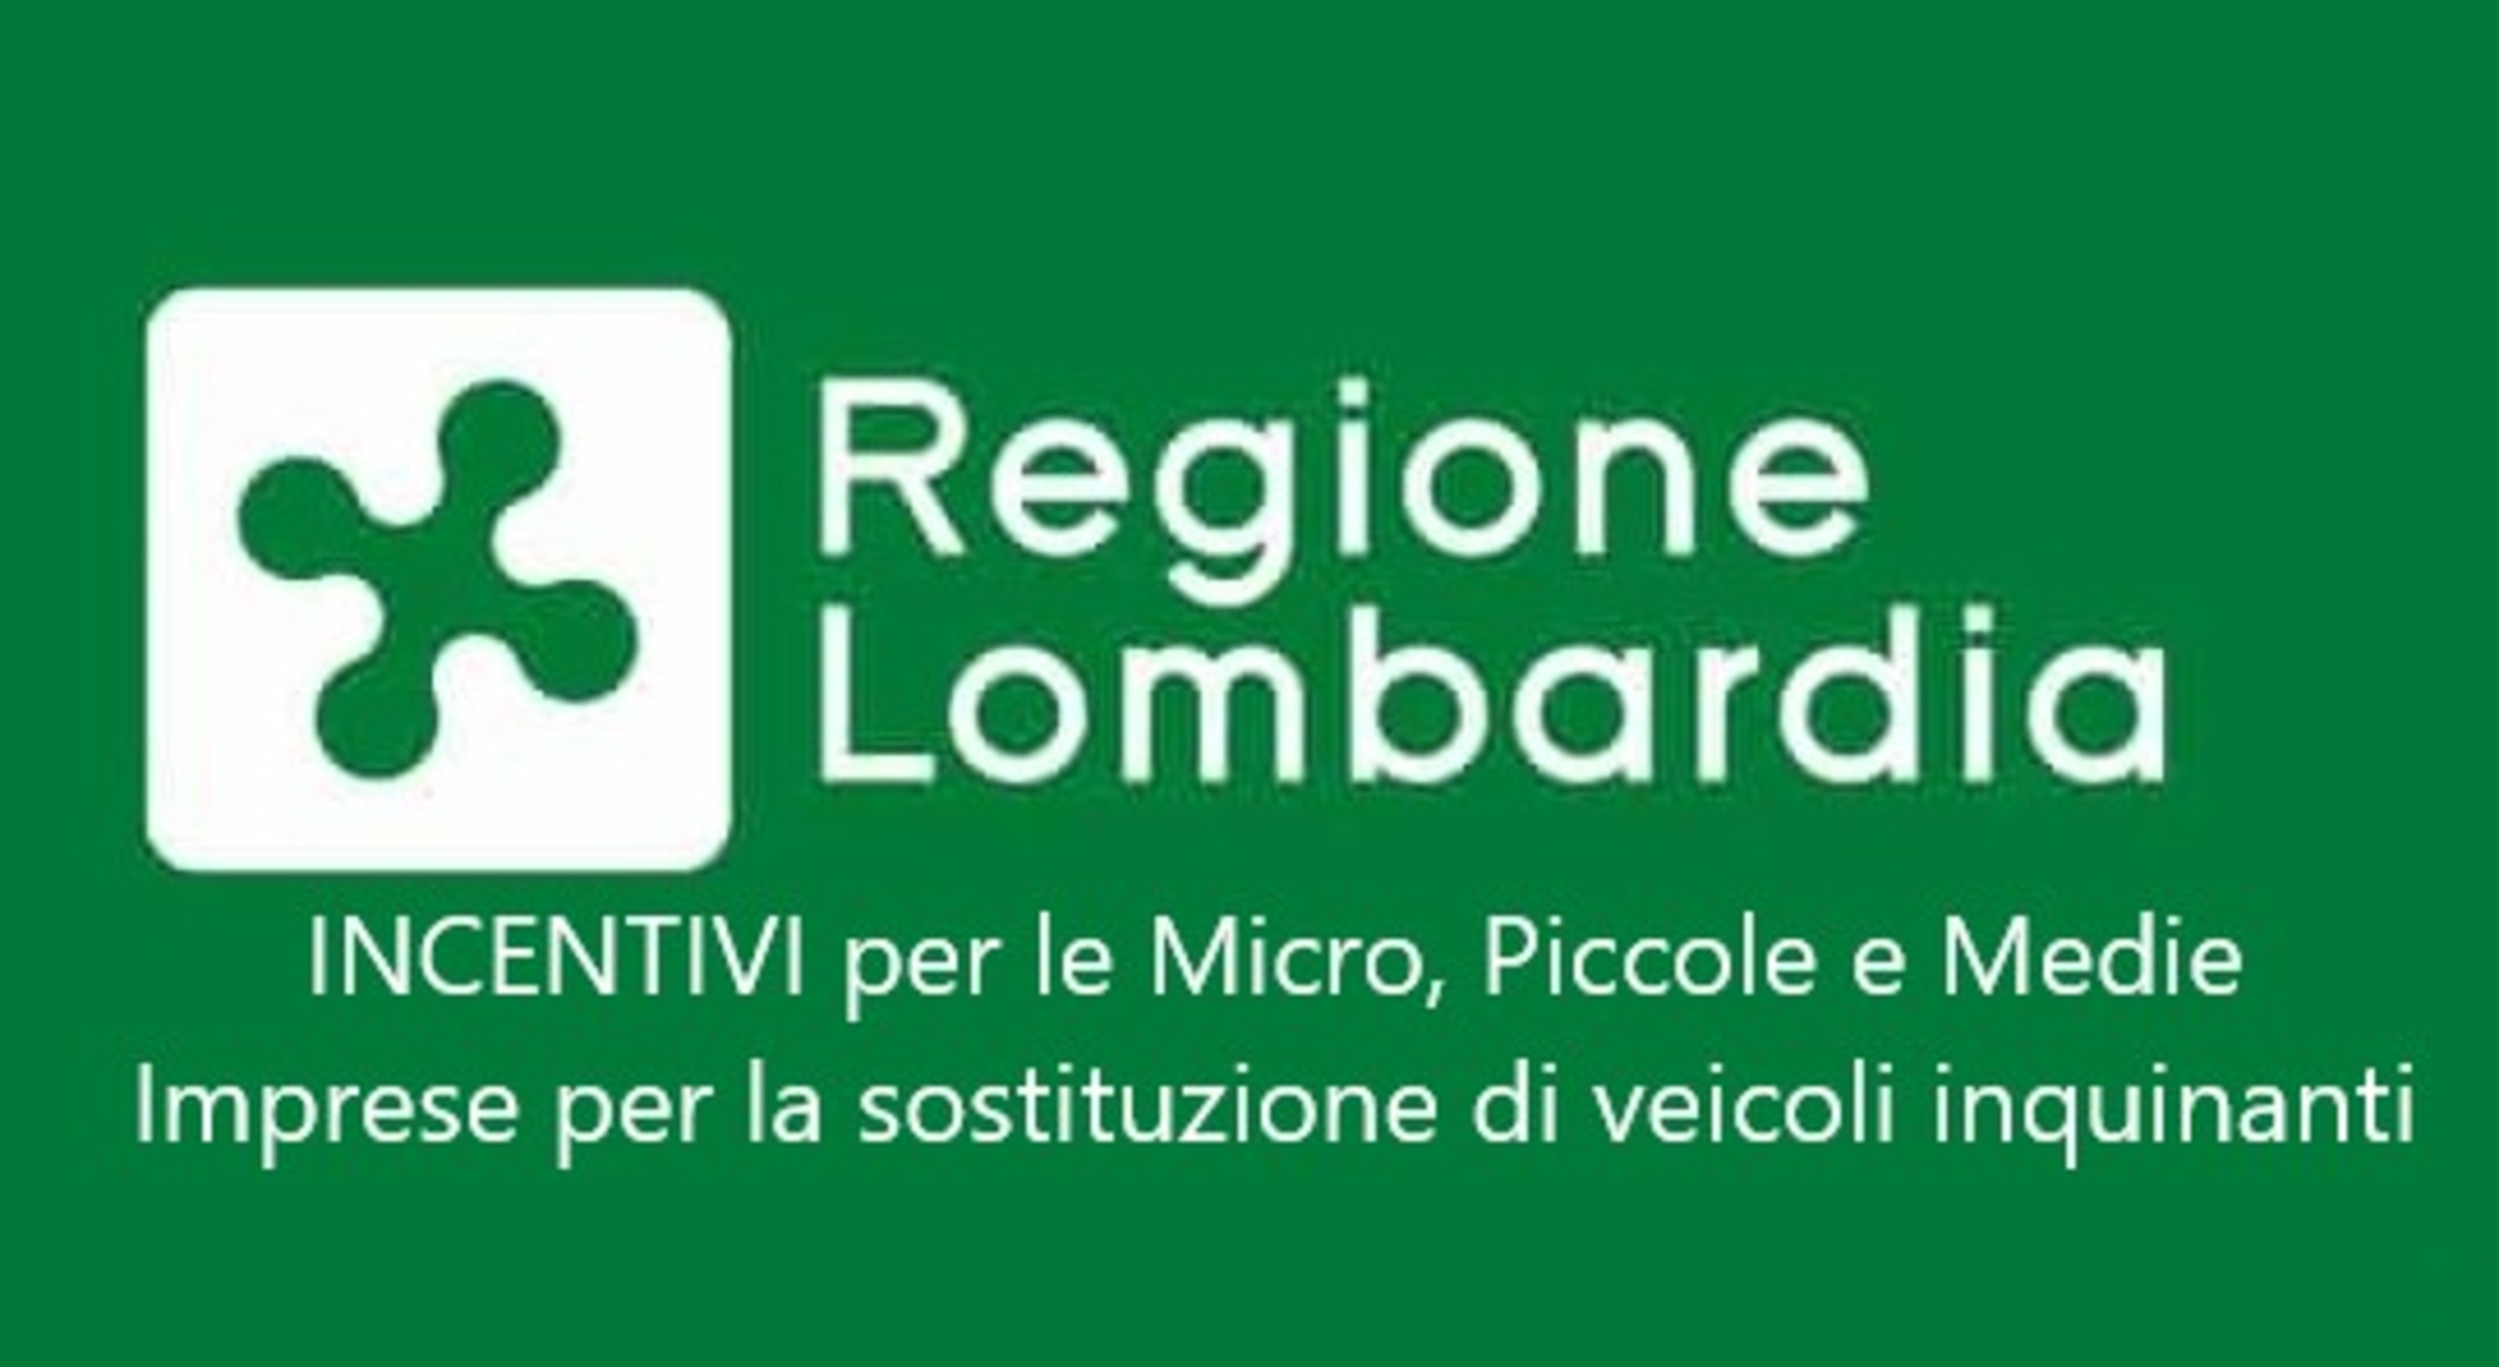 Promozione INCENTIVI DALLA REGIONE LOMBARDIA  - Lombardia Truck